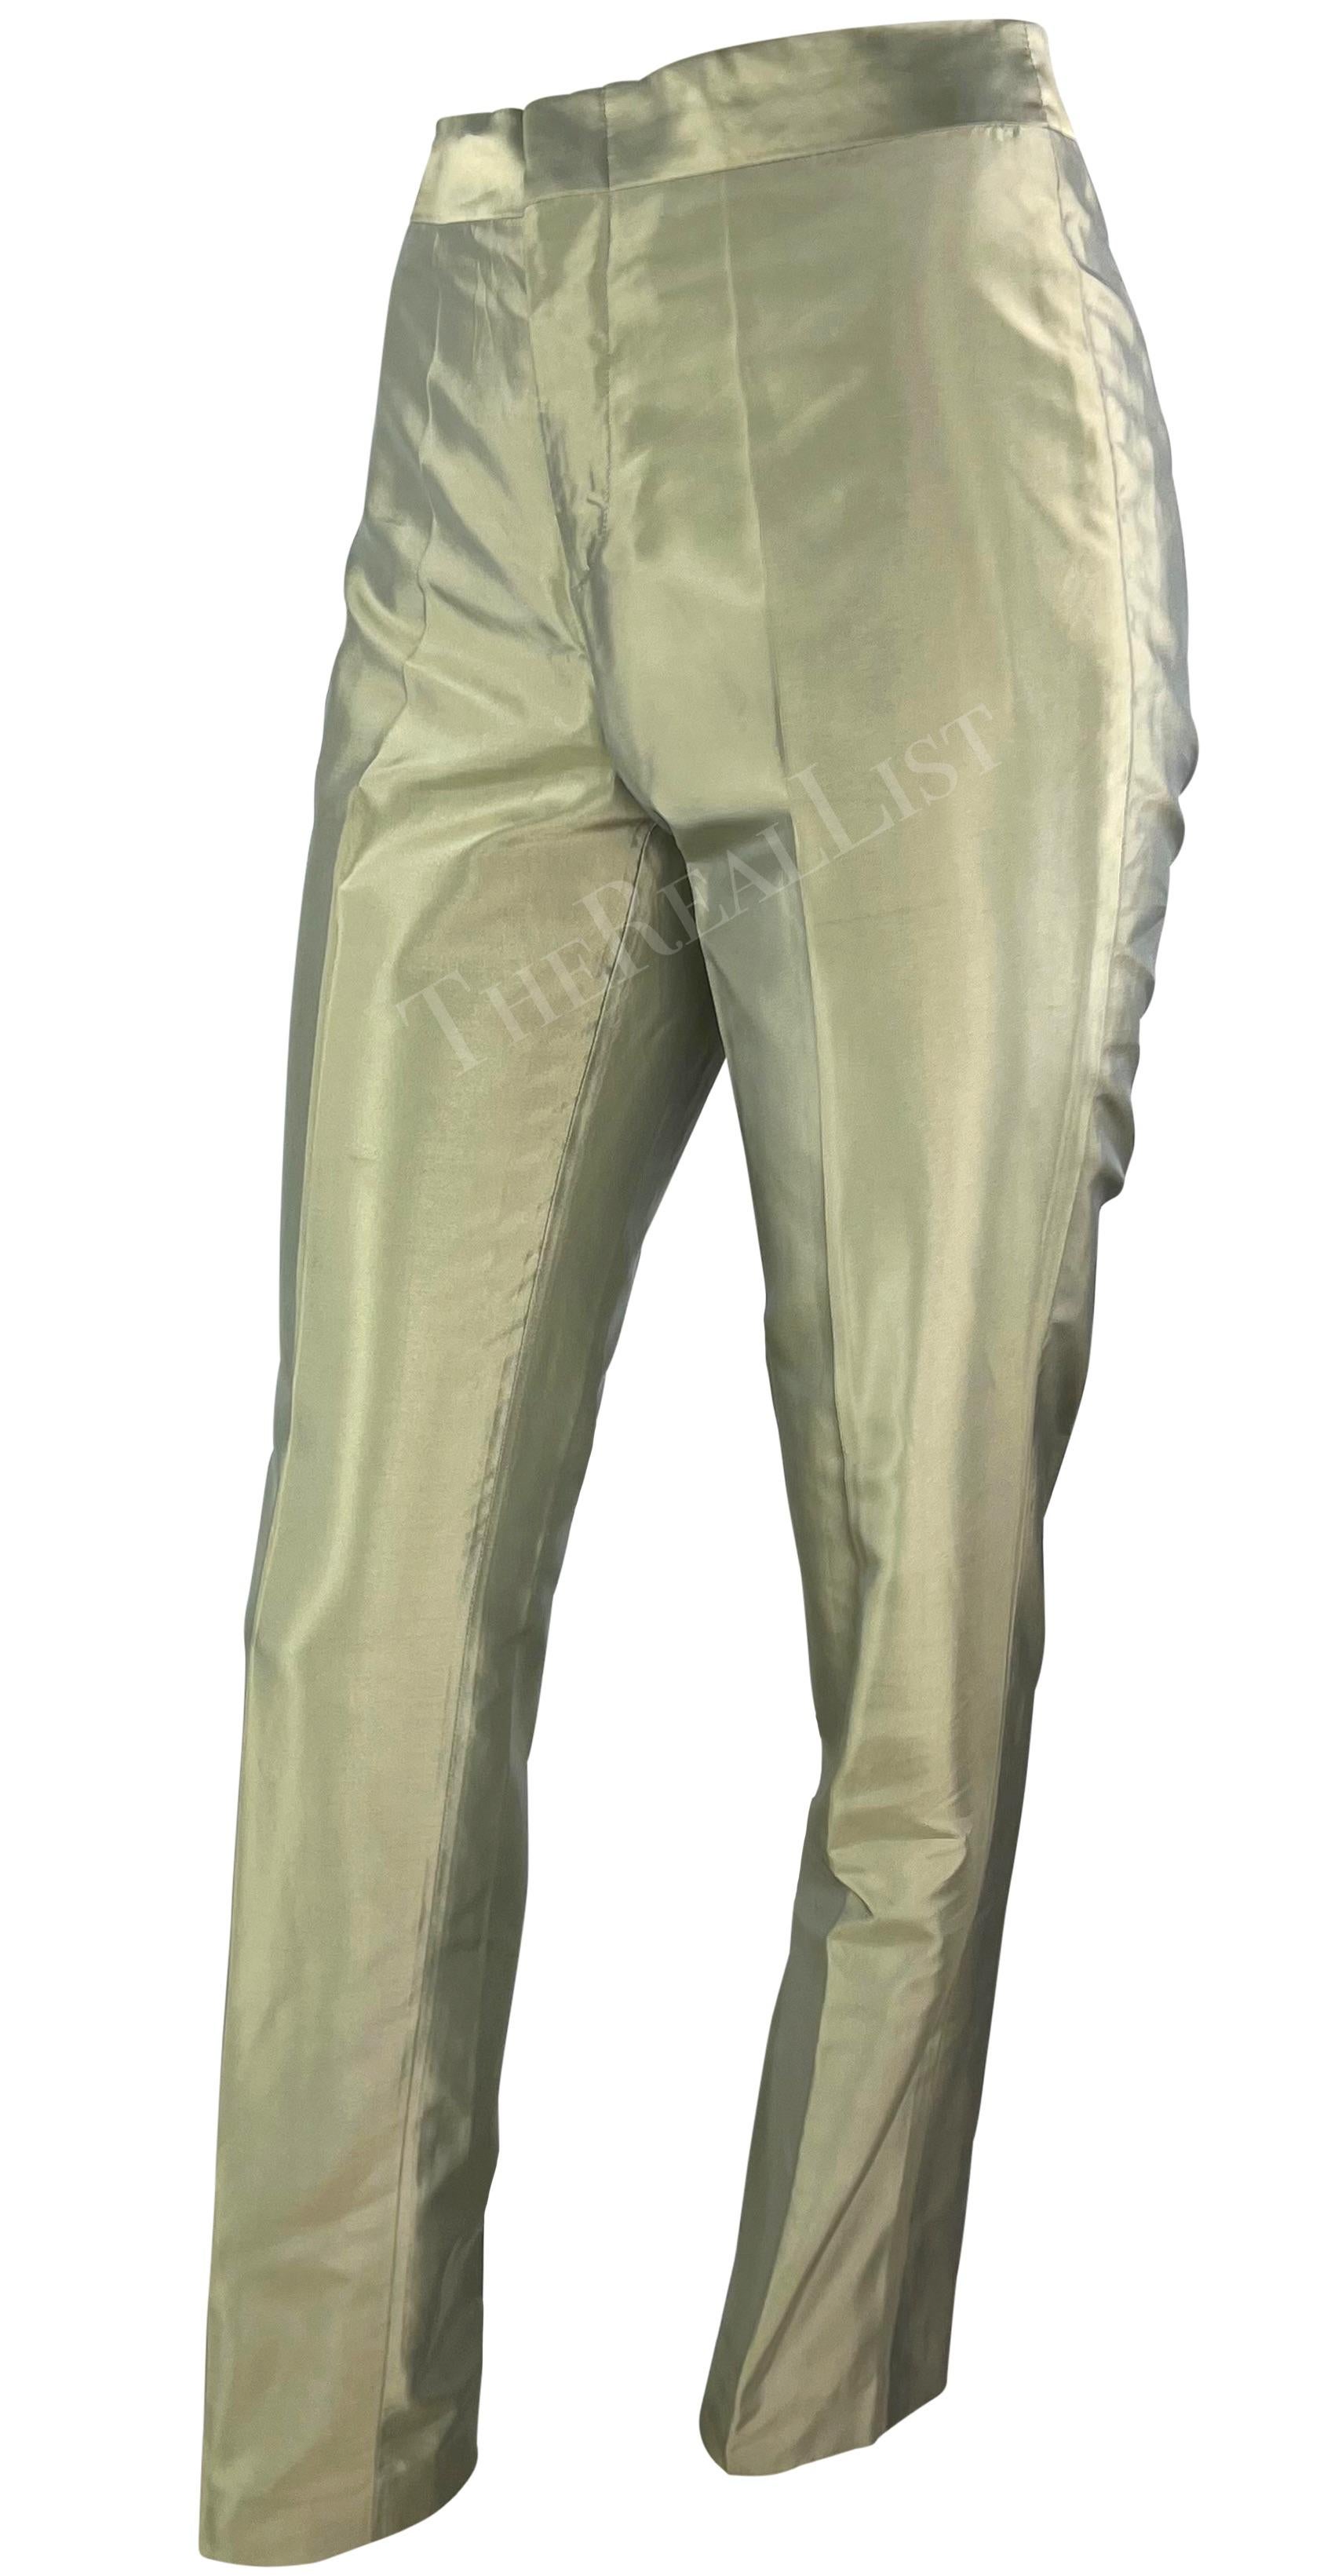 Présentation d'un pantalon vert clair irisé Gucci, dessiné par Tom Ford. Issu de la collection printemps/été 2000, ce pantalon est entièrement réalisé en soie irisée et chatoyante vert clair. Doté d'une taille haute et de plis, ce pantalon cigarette